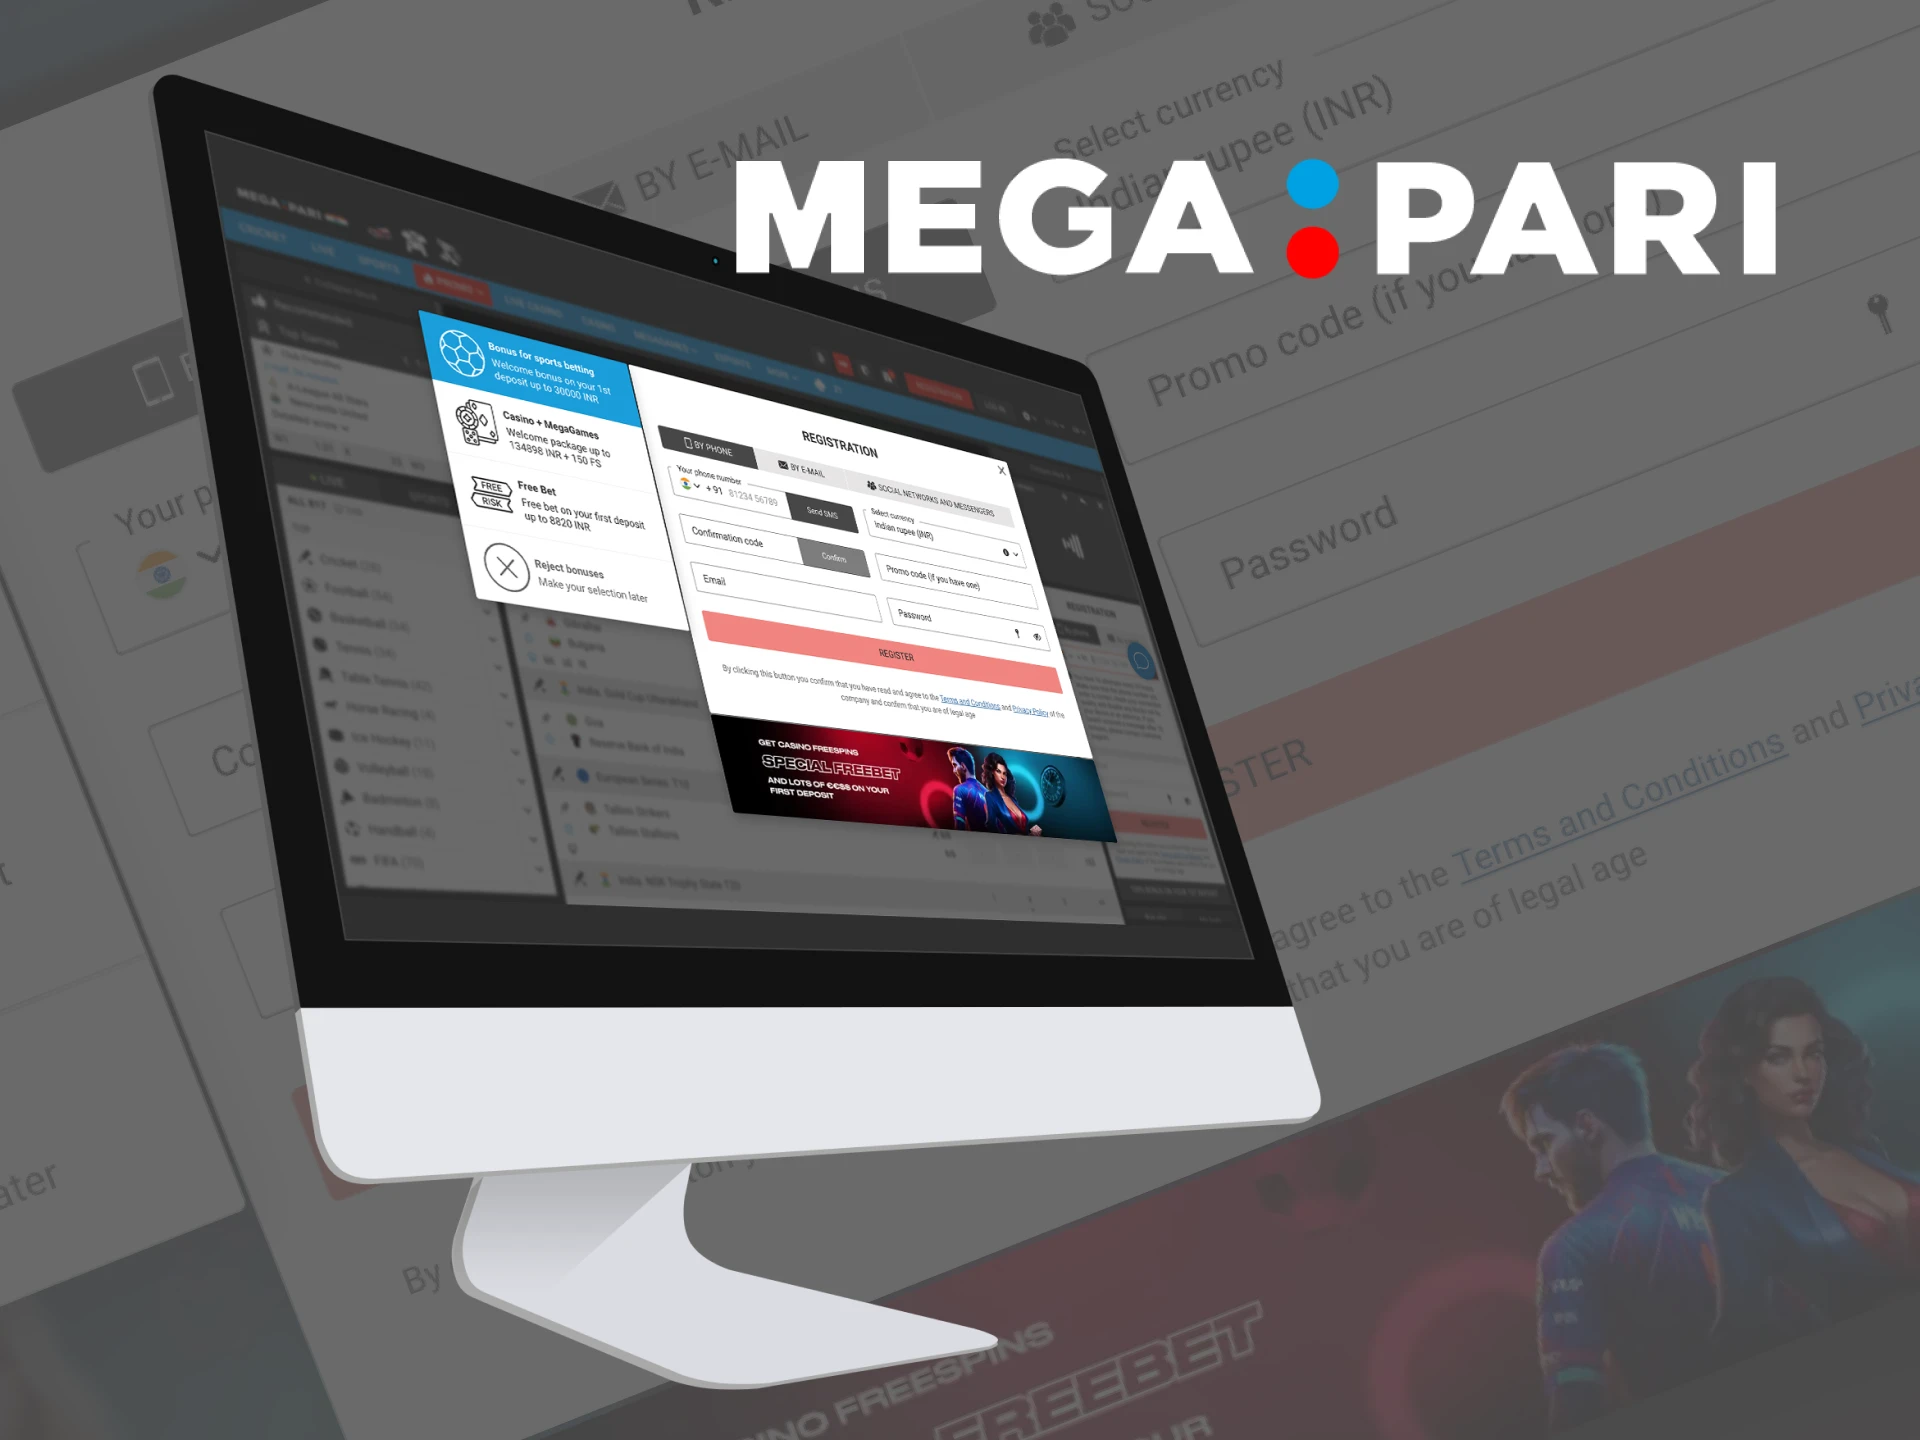 Register on the Megapari website in 3 steps.